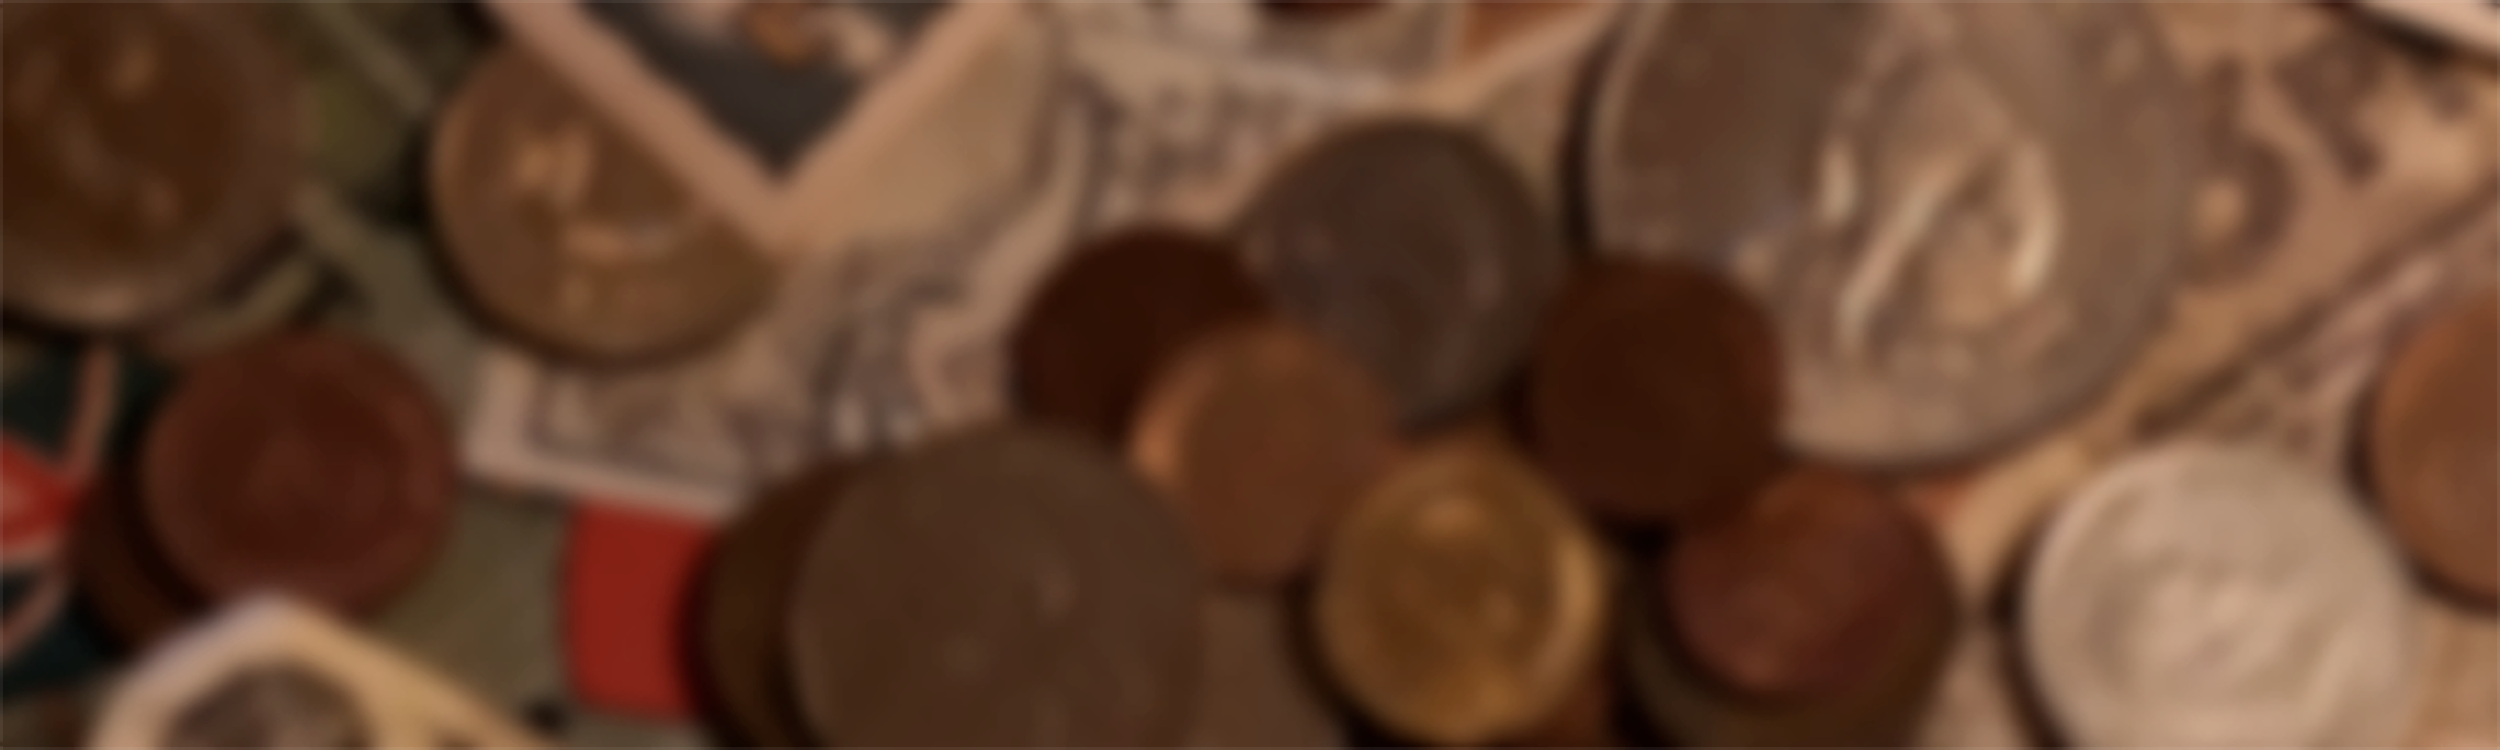 Mønter og sedler - vurdering af mønter og sedler